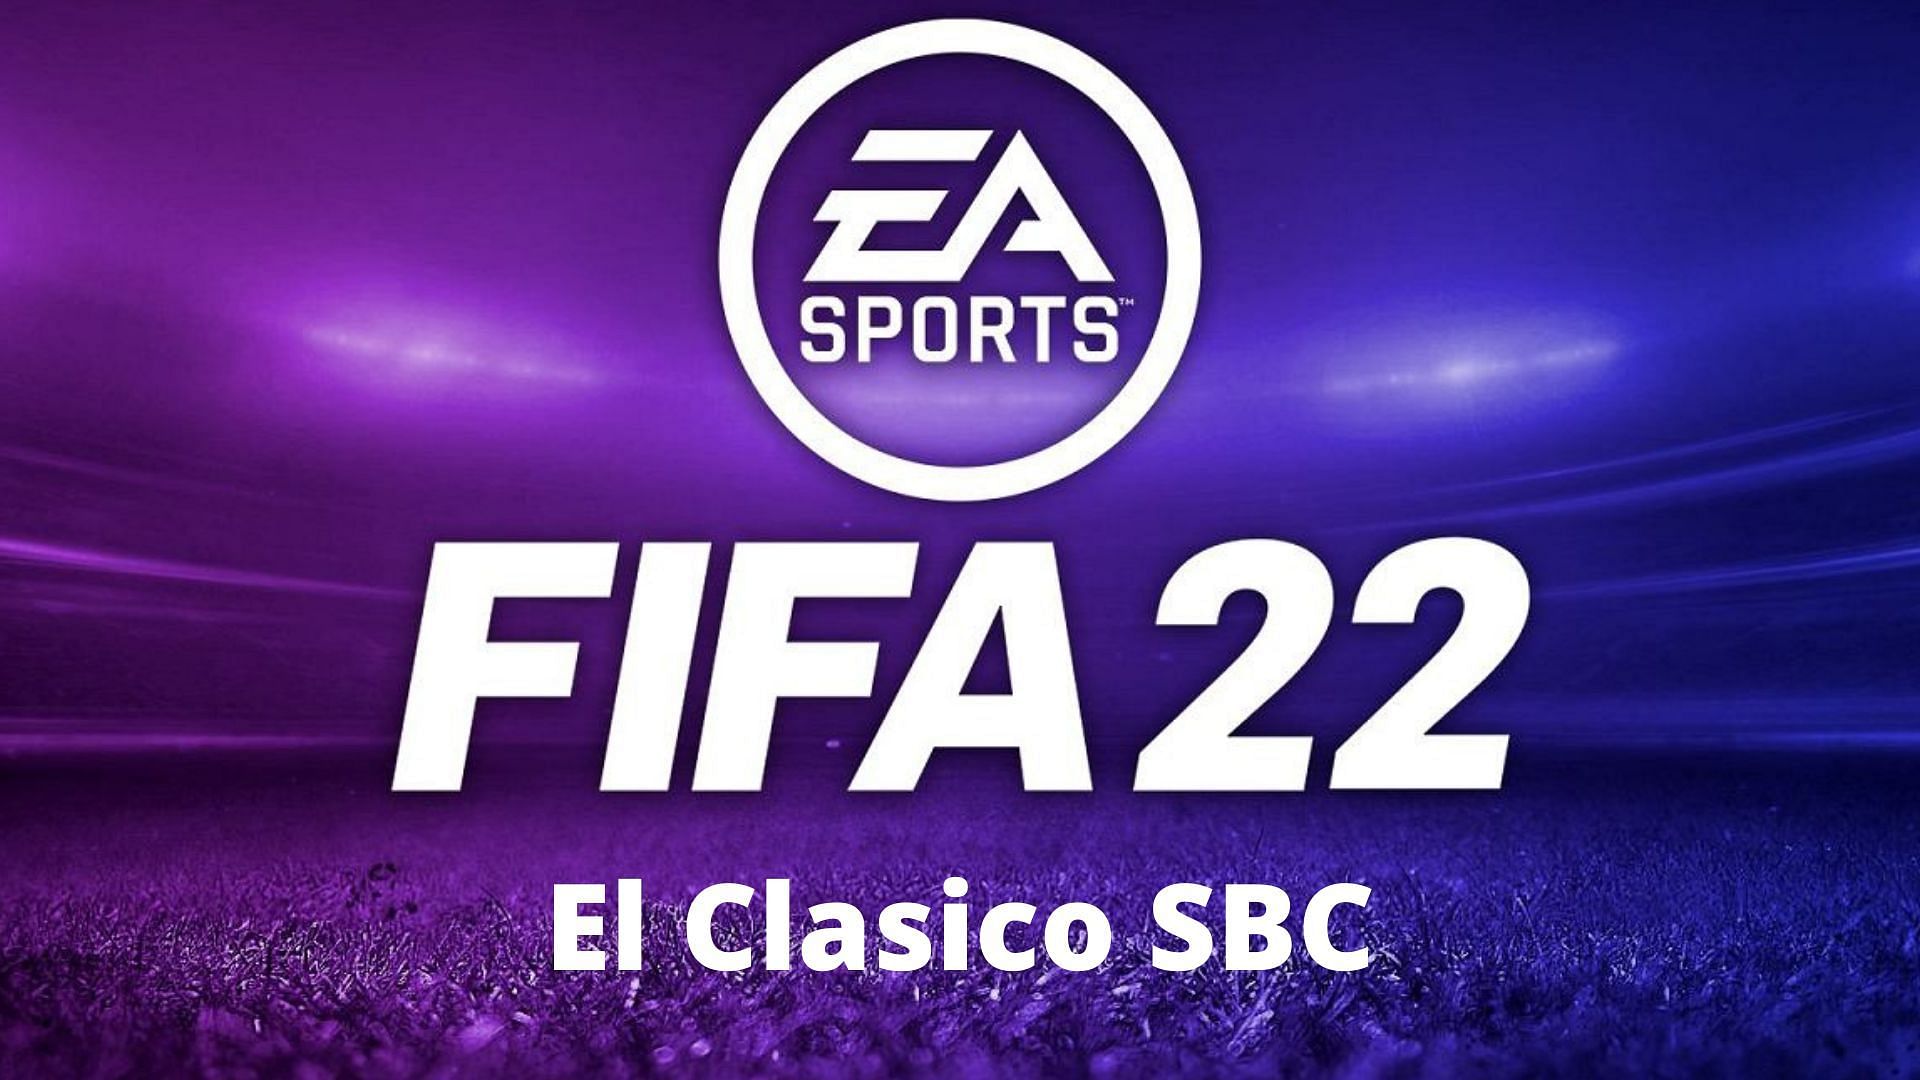 El Clasico SBC is now live in FIFA 22 Ultimate Team (Image via Sportskeeda)